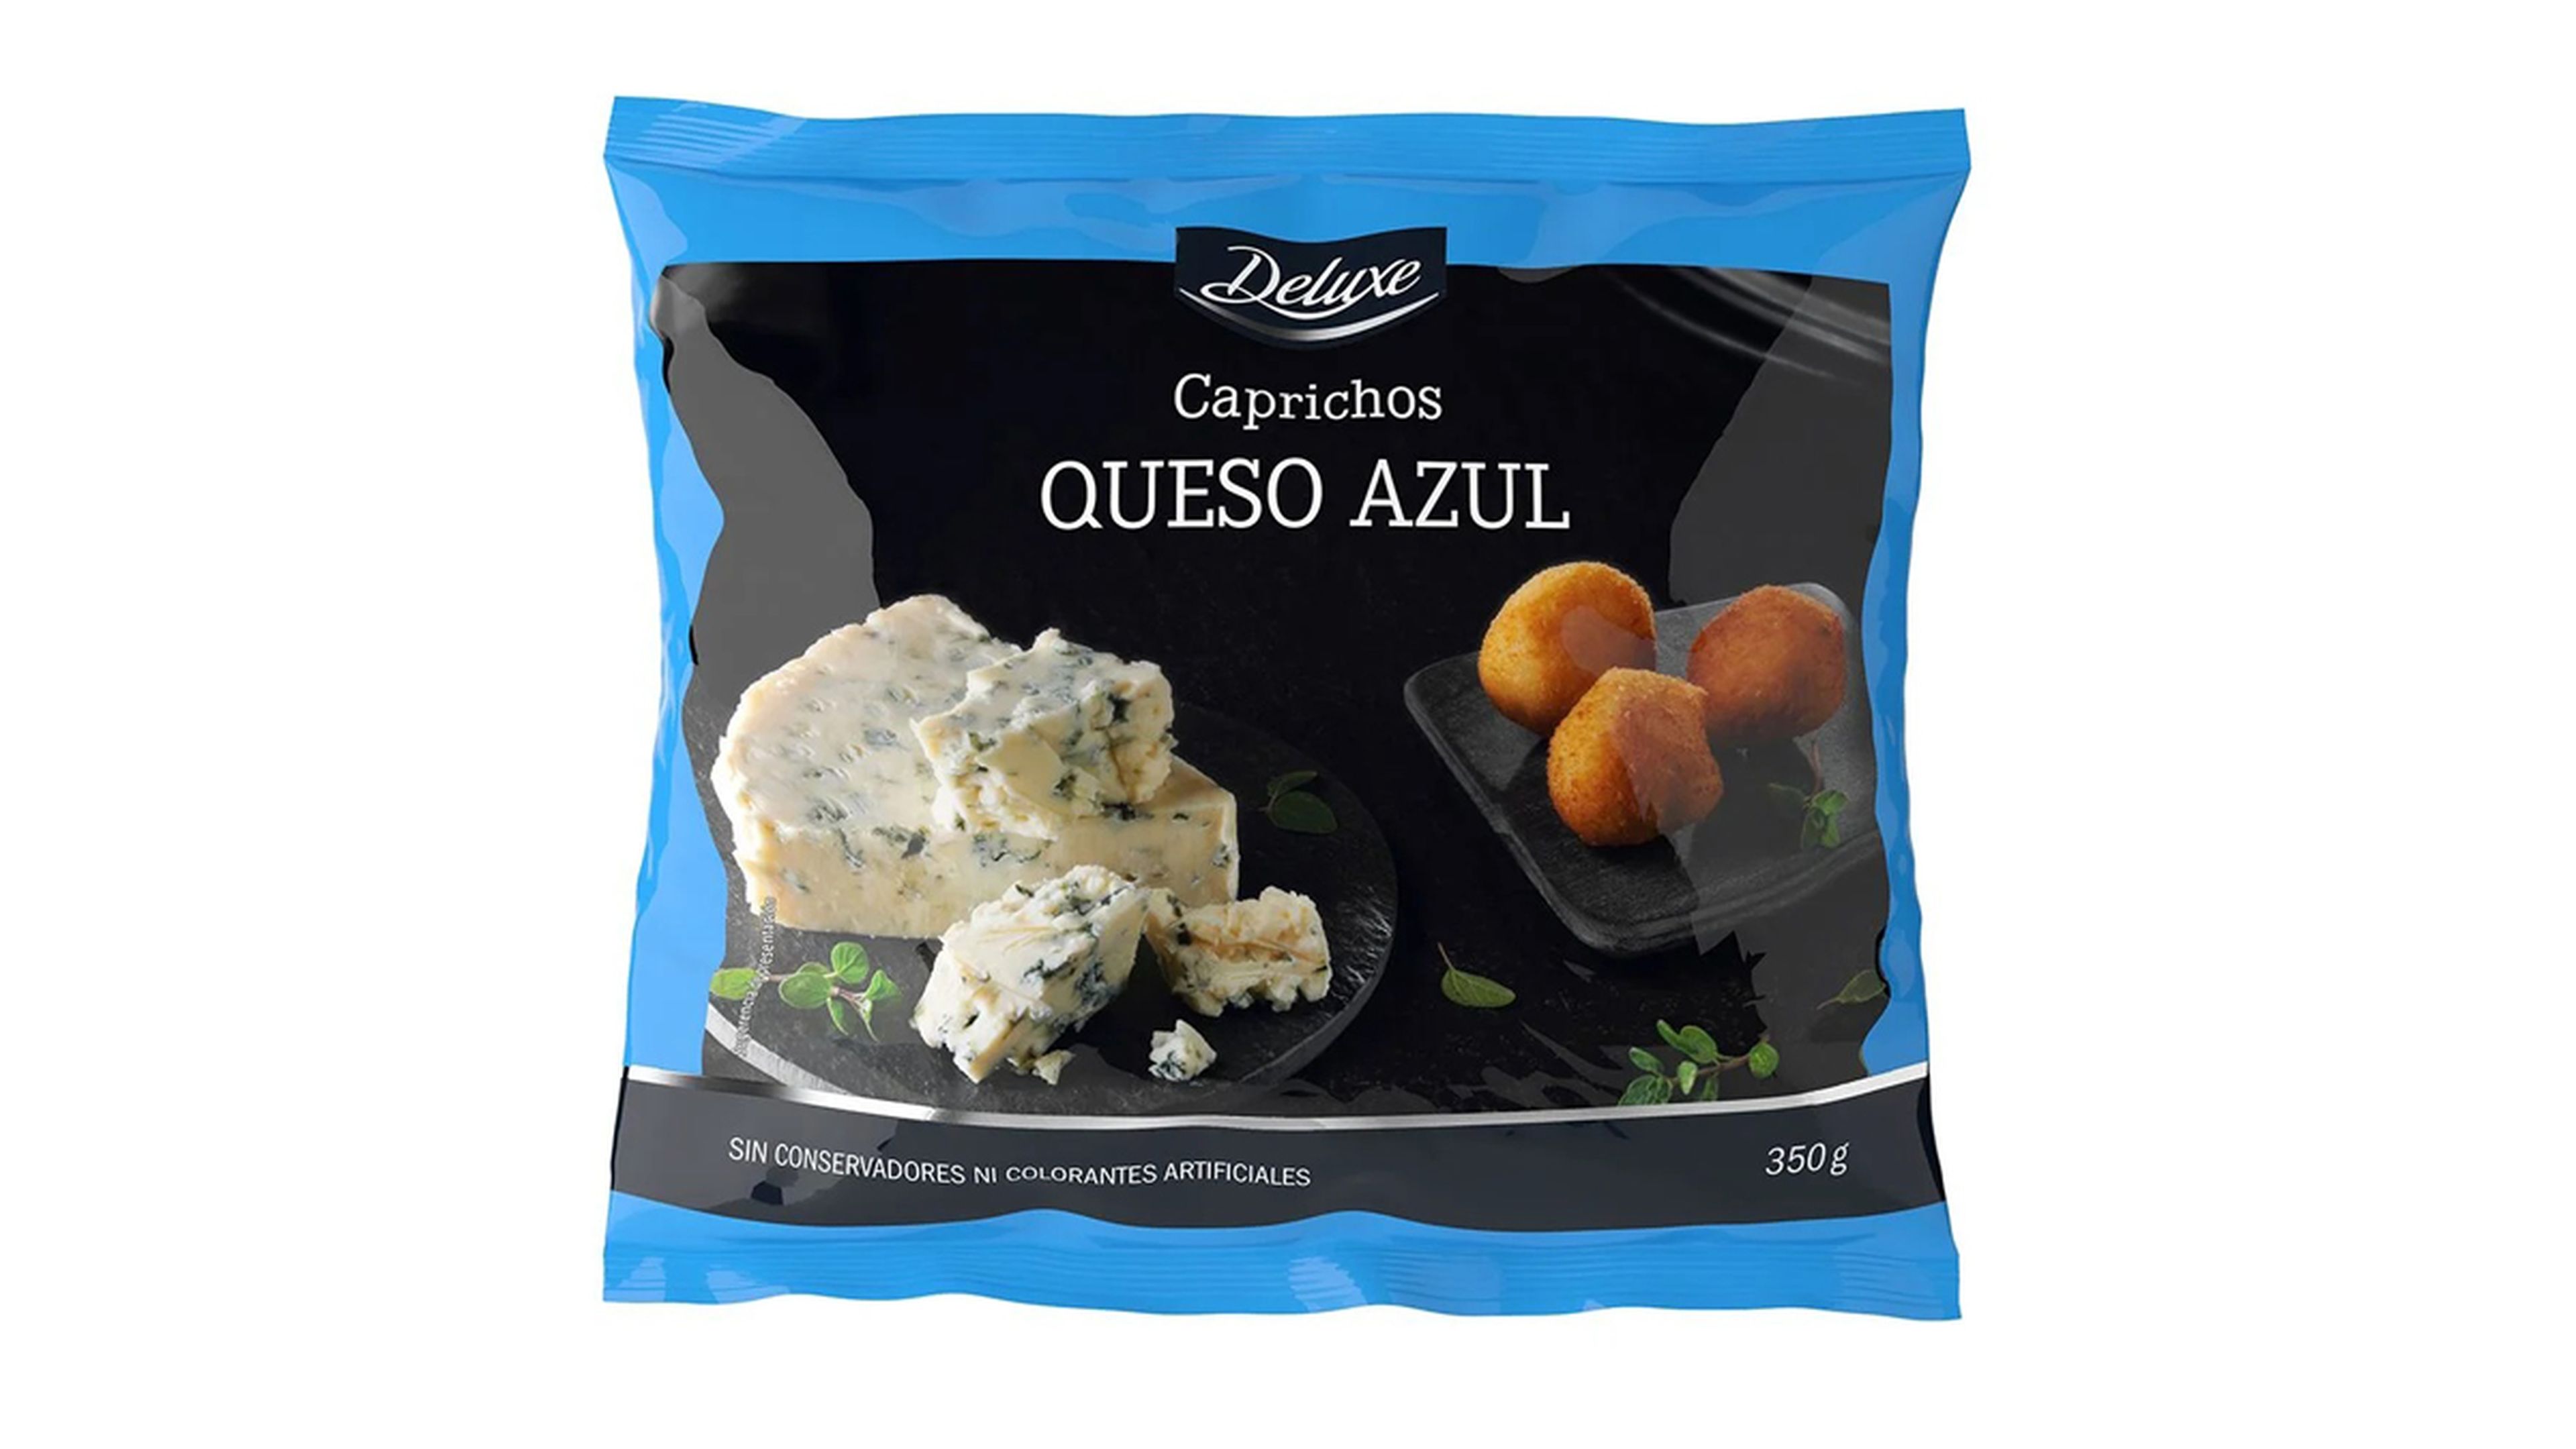 Caprichos de queso azul